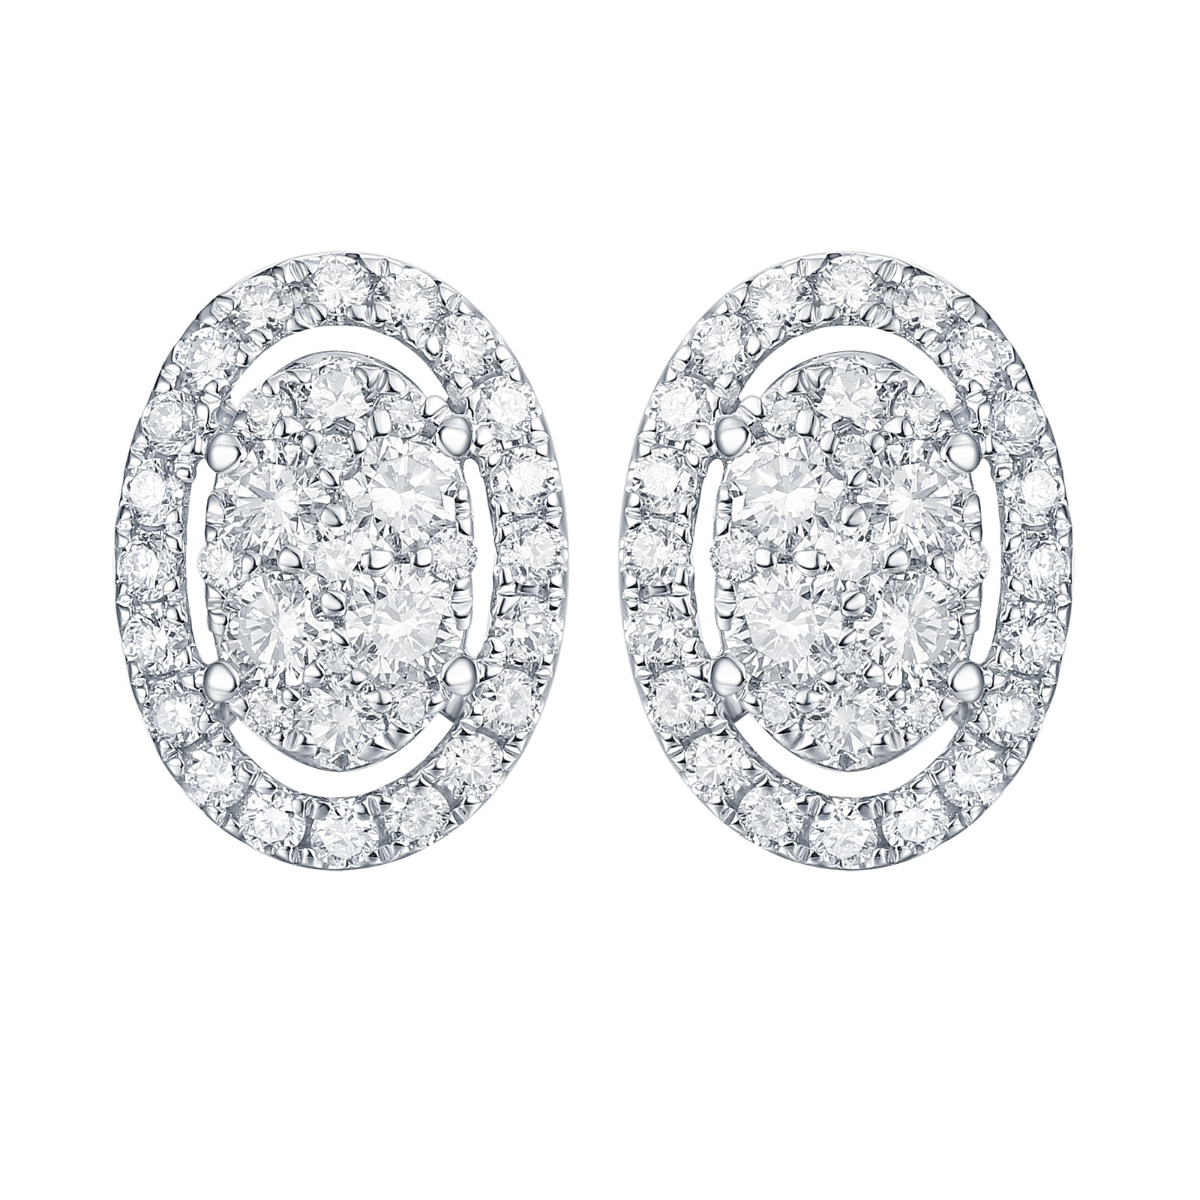 E35522WHT – 18K White Gold Diamond Earring, 0.67 TCW